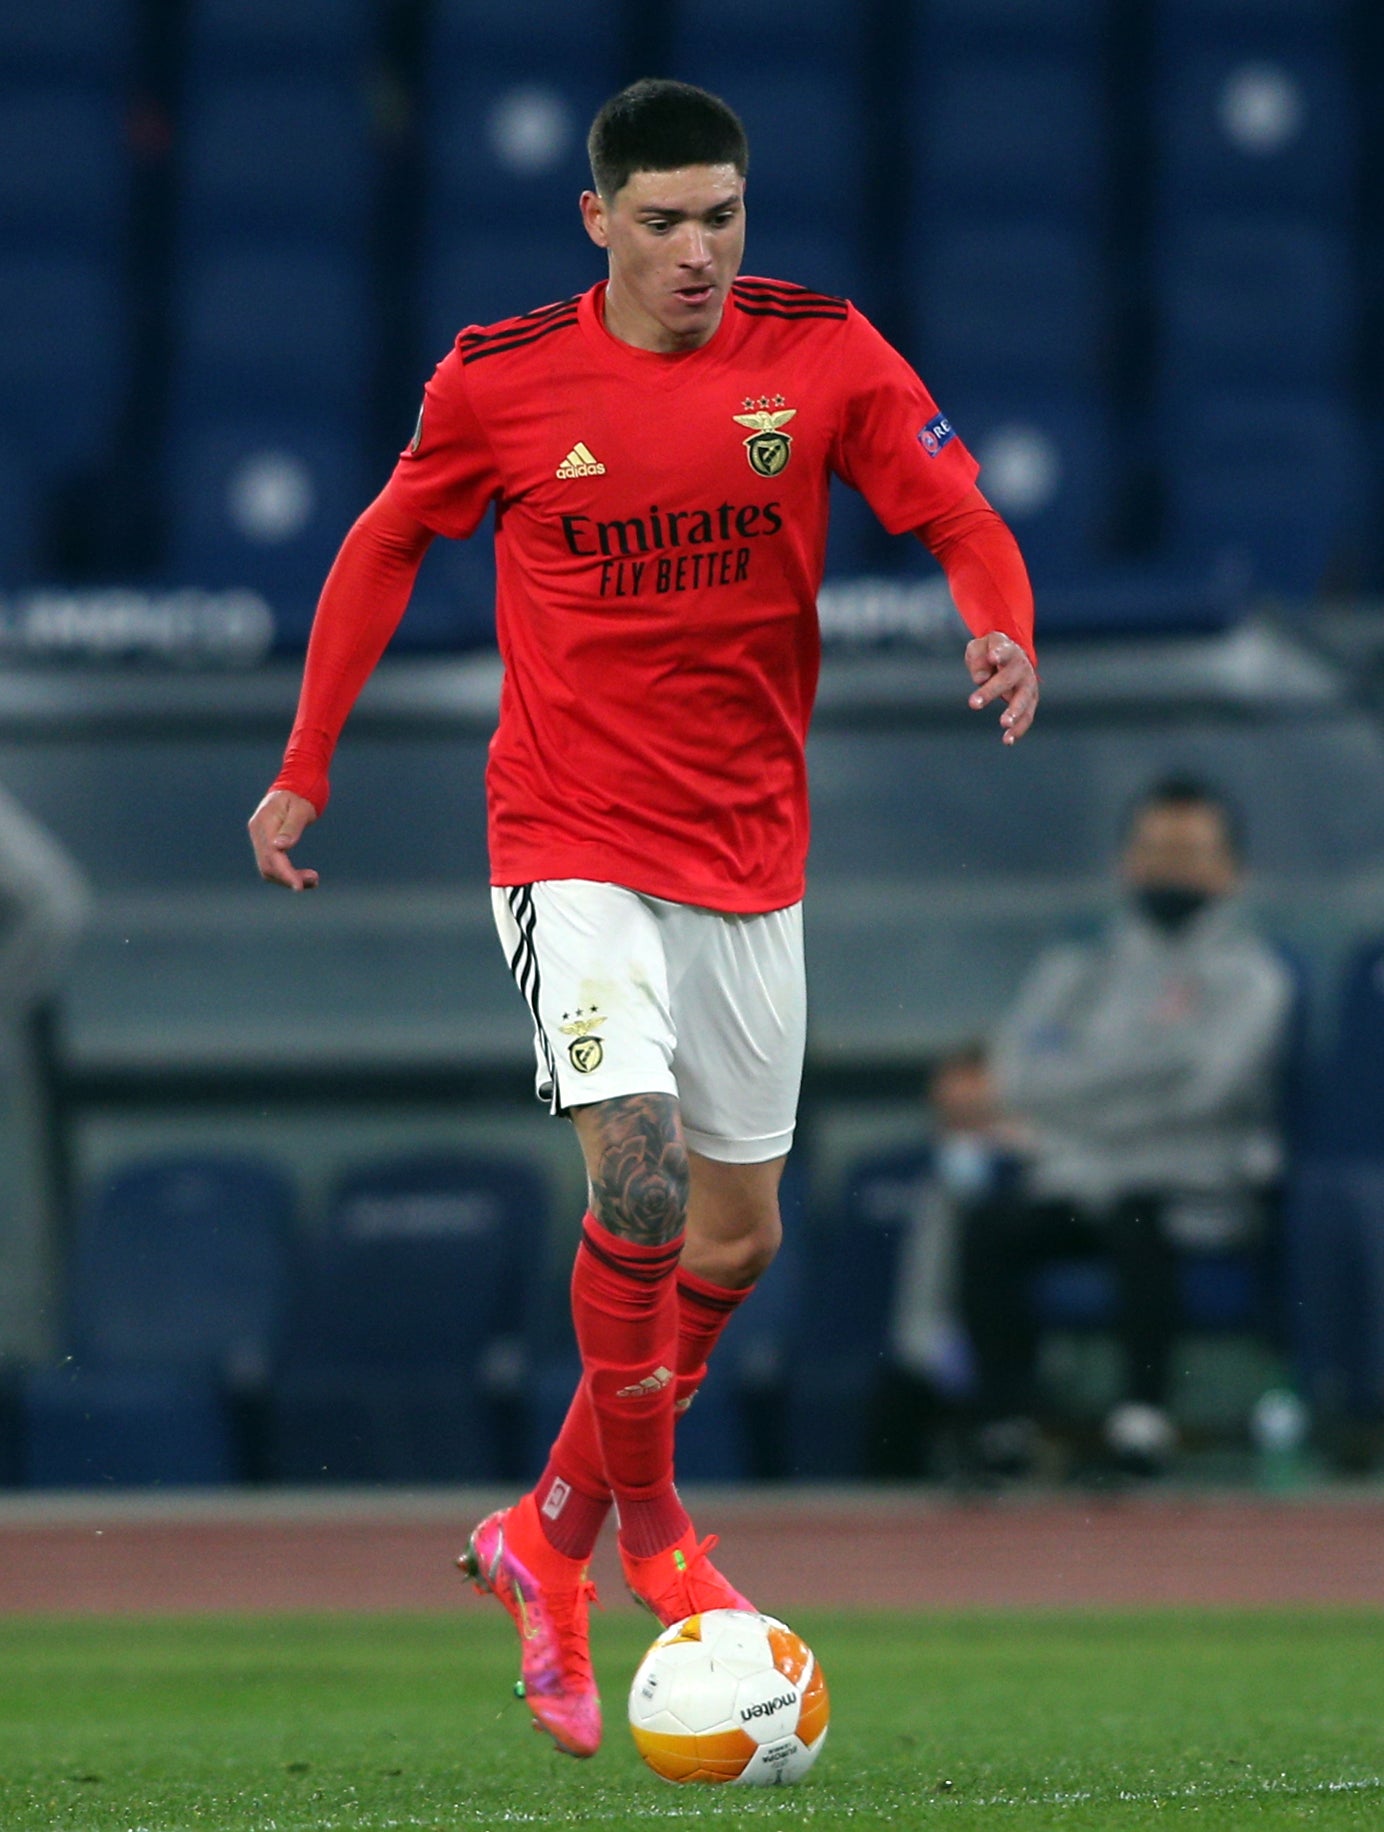 Benfica’s Darwin Nunez with the ball (Marco Iacobucci/PA)